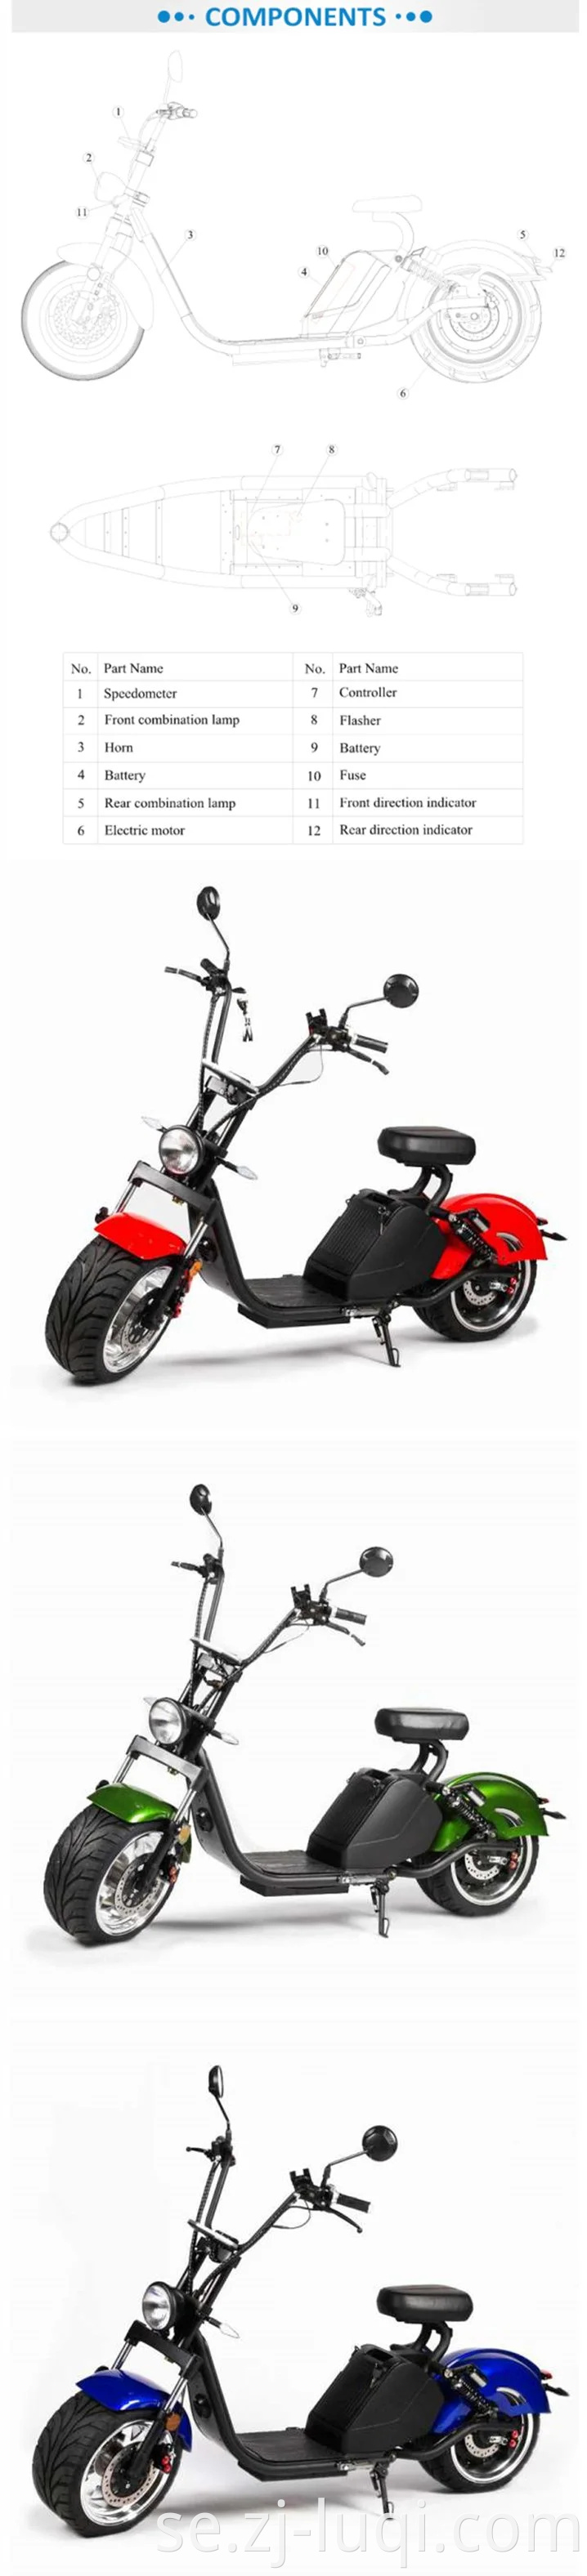 Partihandel Bästa köp 2020 Ny motorcykel EEG fettdäck 1500W/3000W Citycoco vuxen chopper scooter elektrisk